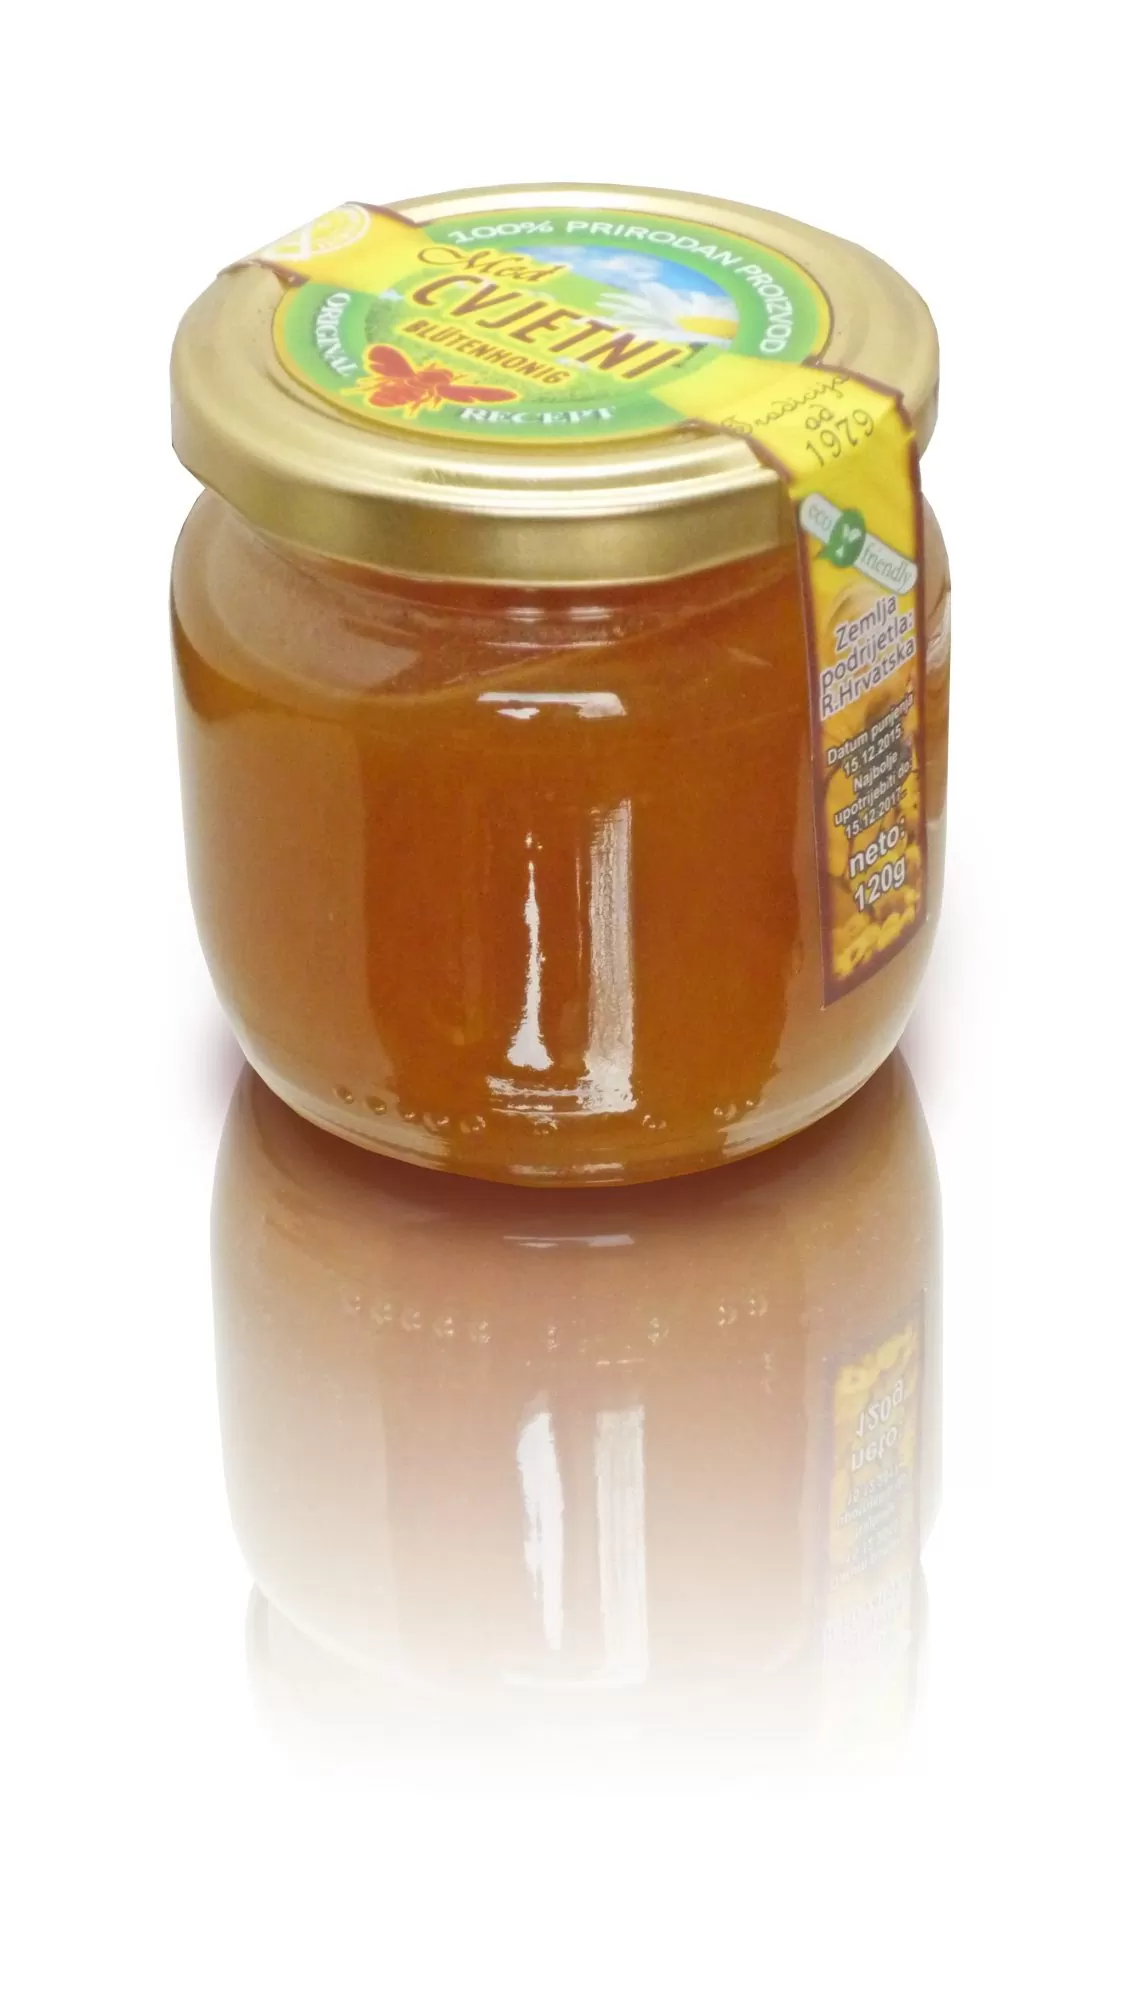 Flower honey 250 g